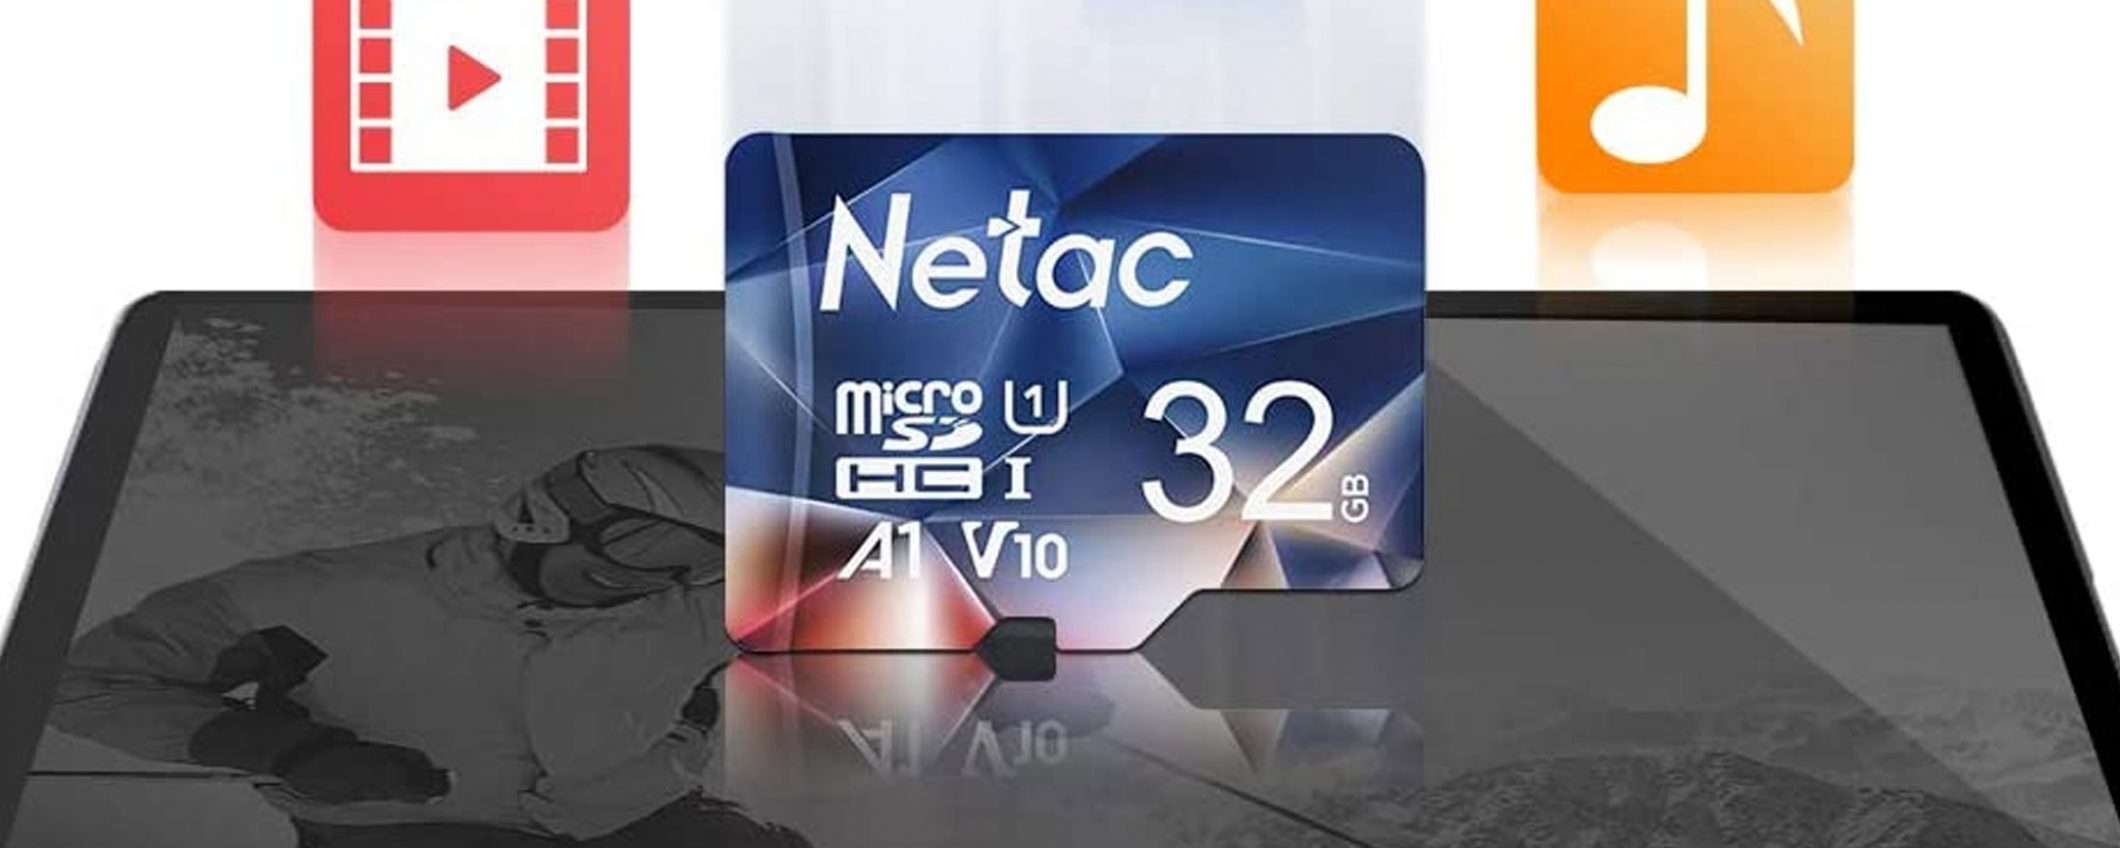 Tre ottime microSD da 32 GB a meno di 20 €